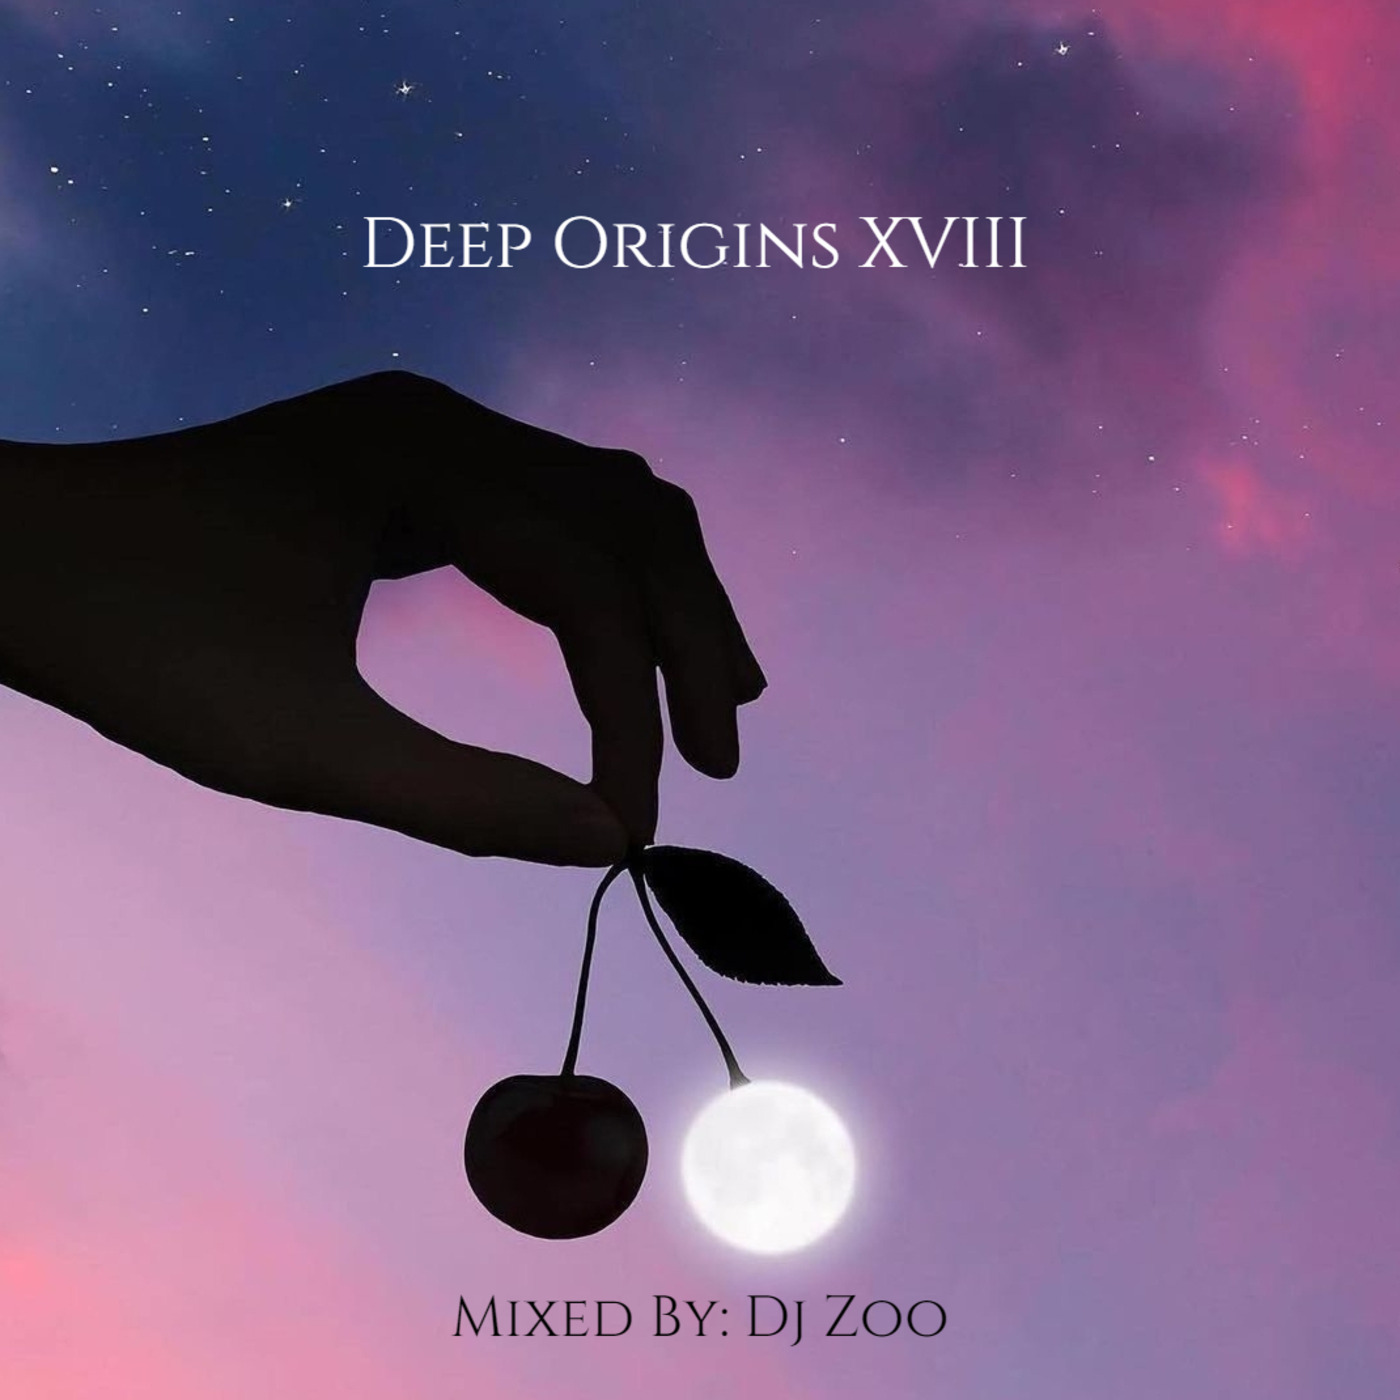 Episode 31: Dj Zoo - Deep Origins XVII